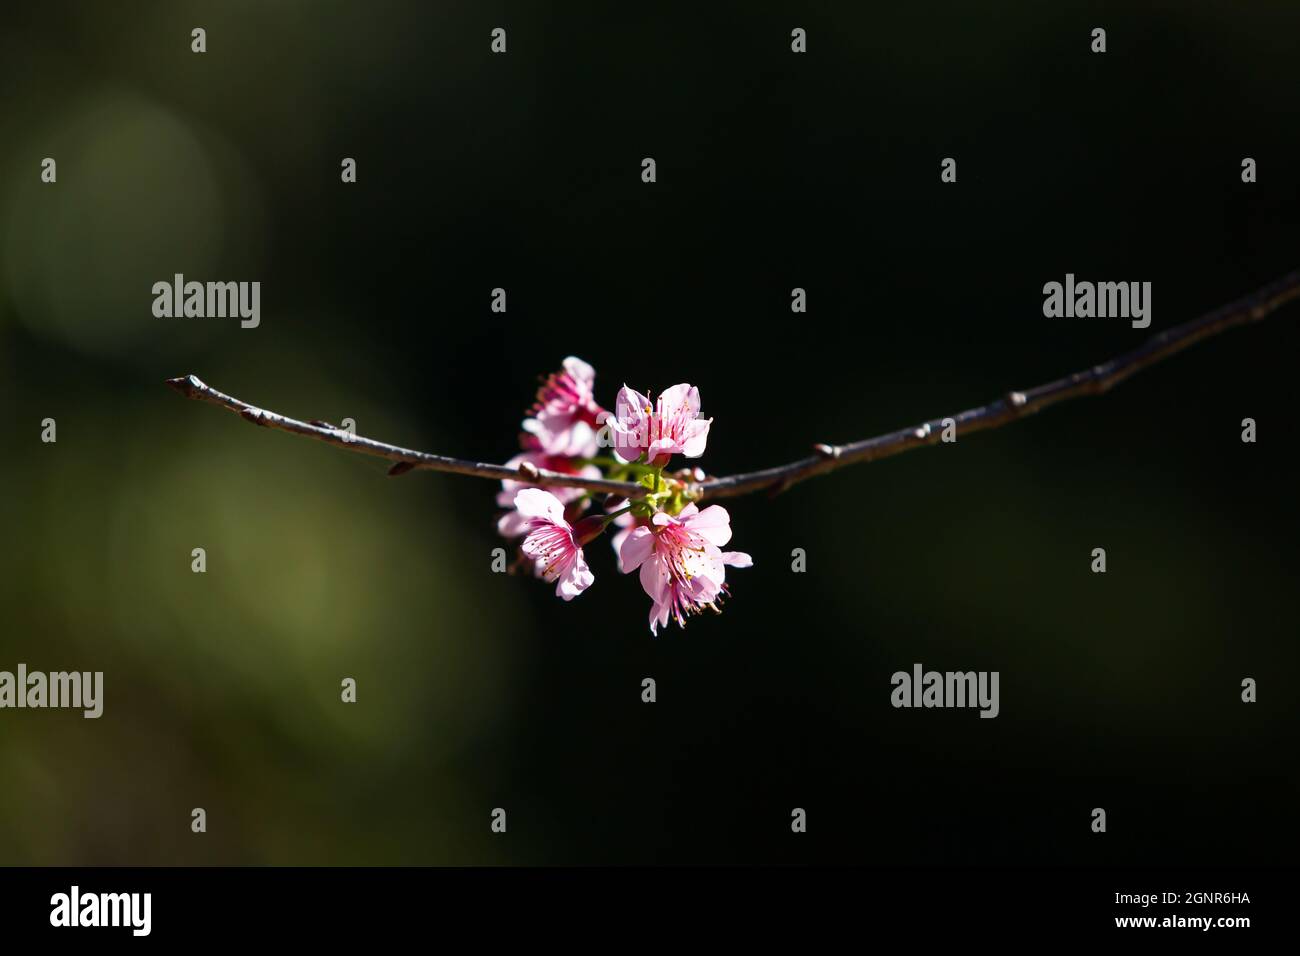 Fleurs de cerisier de pêche sur les branches des arbres, ombre floue dans l'arrière-plan. Abricot japonais ou prune chinoise. Fleur de printemps. Gros plan. Banque D'Images